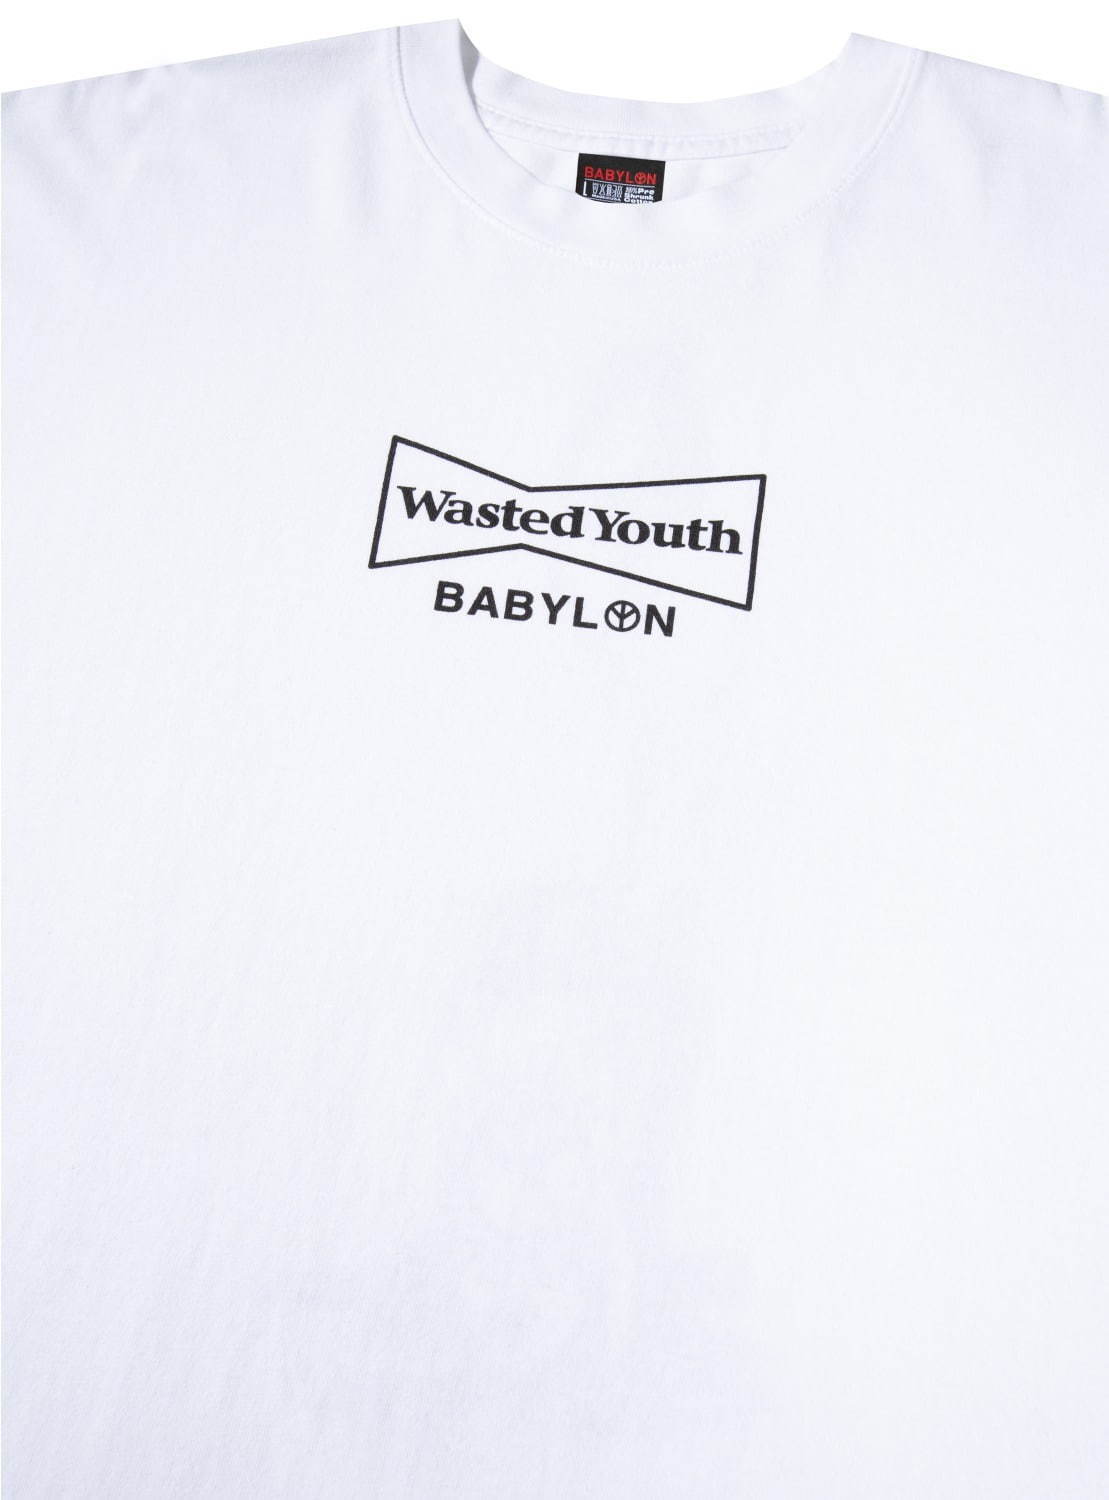 Wasted youth × BABYLONコラボTシャツ Lサイズ